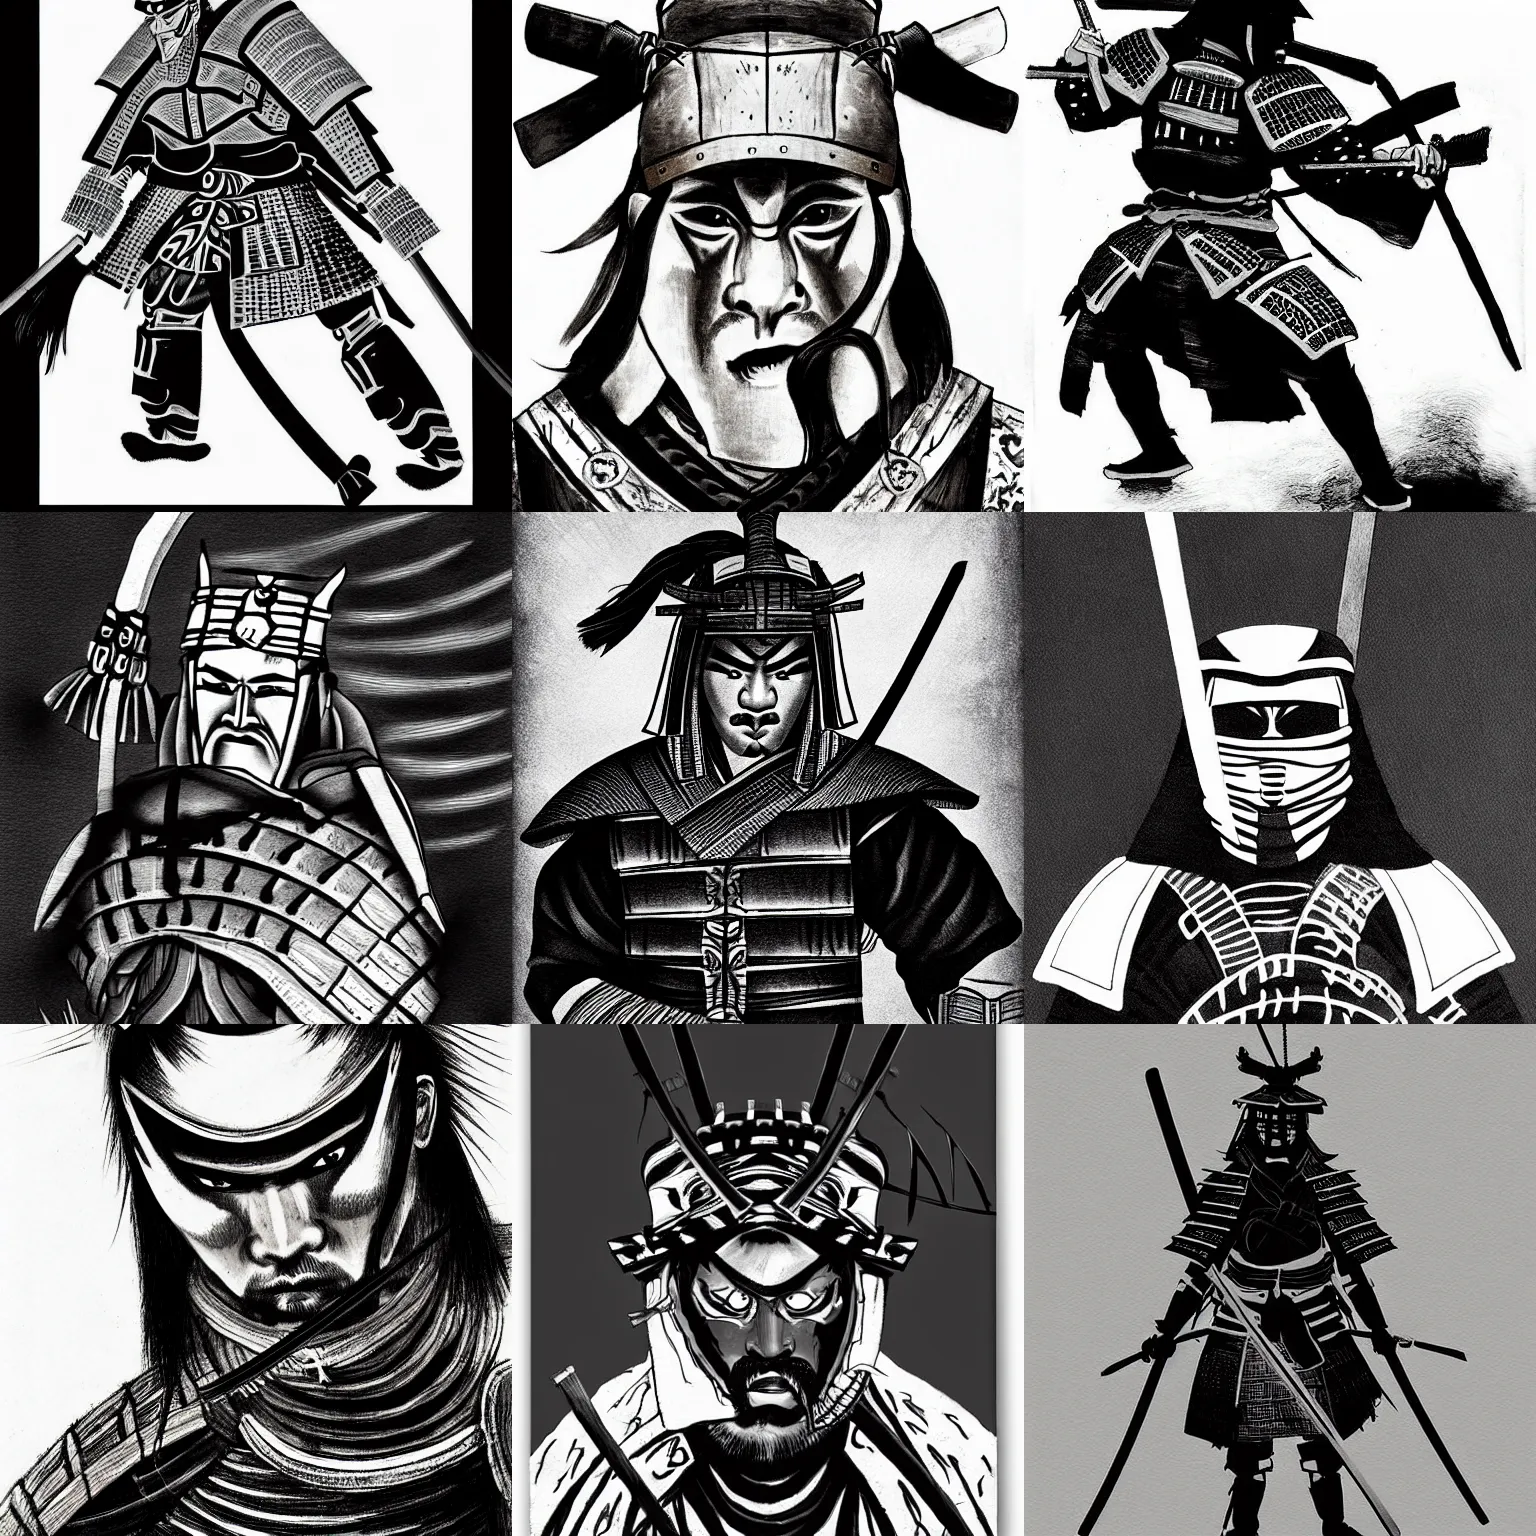 Prompt: samurai warrior, black and white ink by grzegorz rosinski